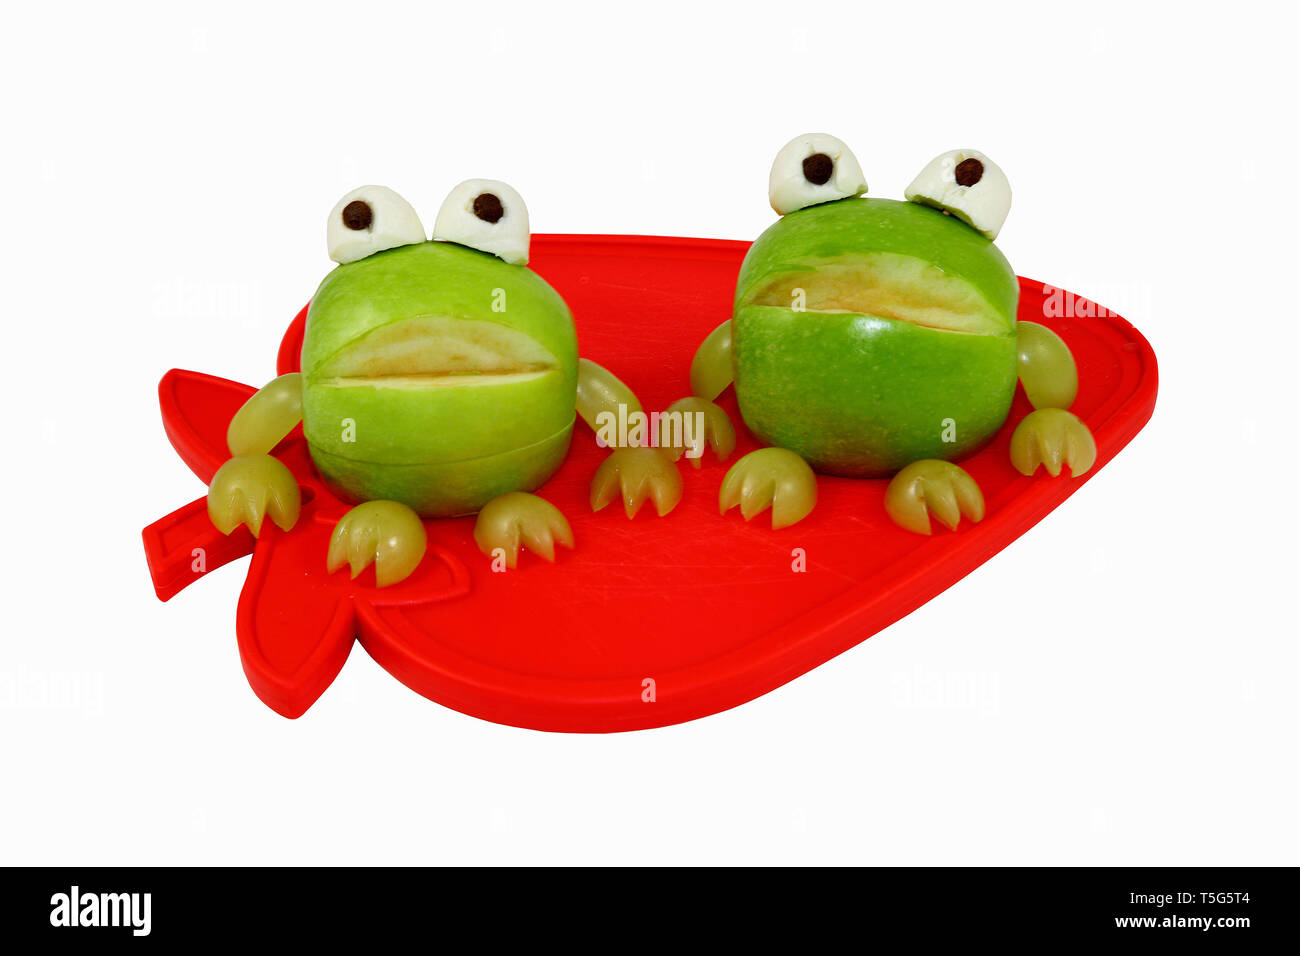 Les grenouilles, les grenouilles Apple sculpté grenouilles - isolé sur un fond blanc. Banque D'Images